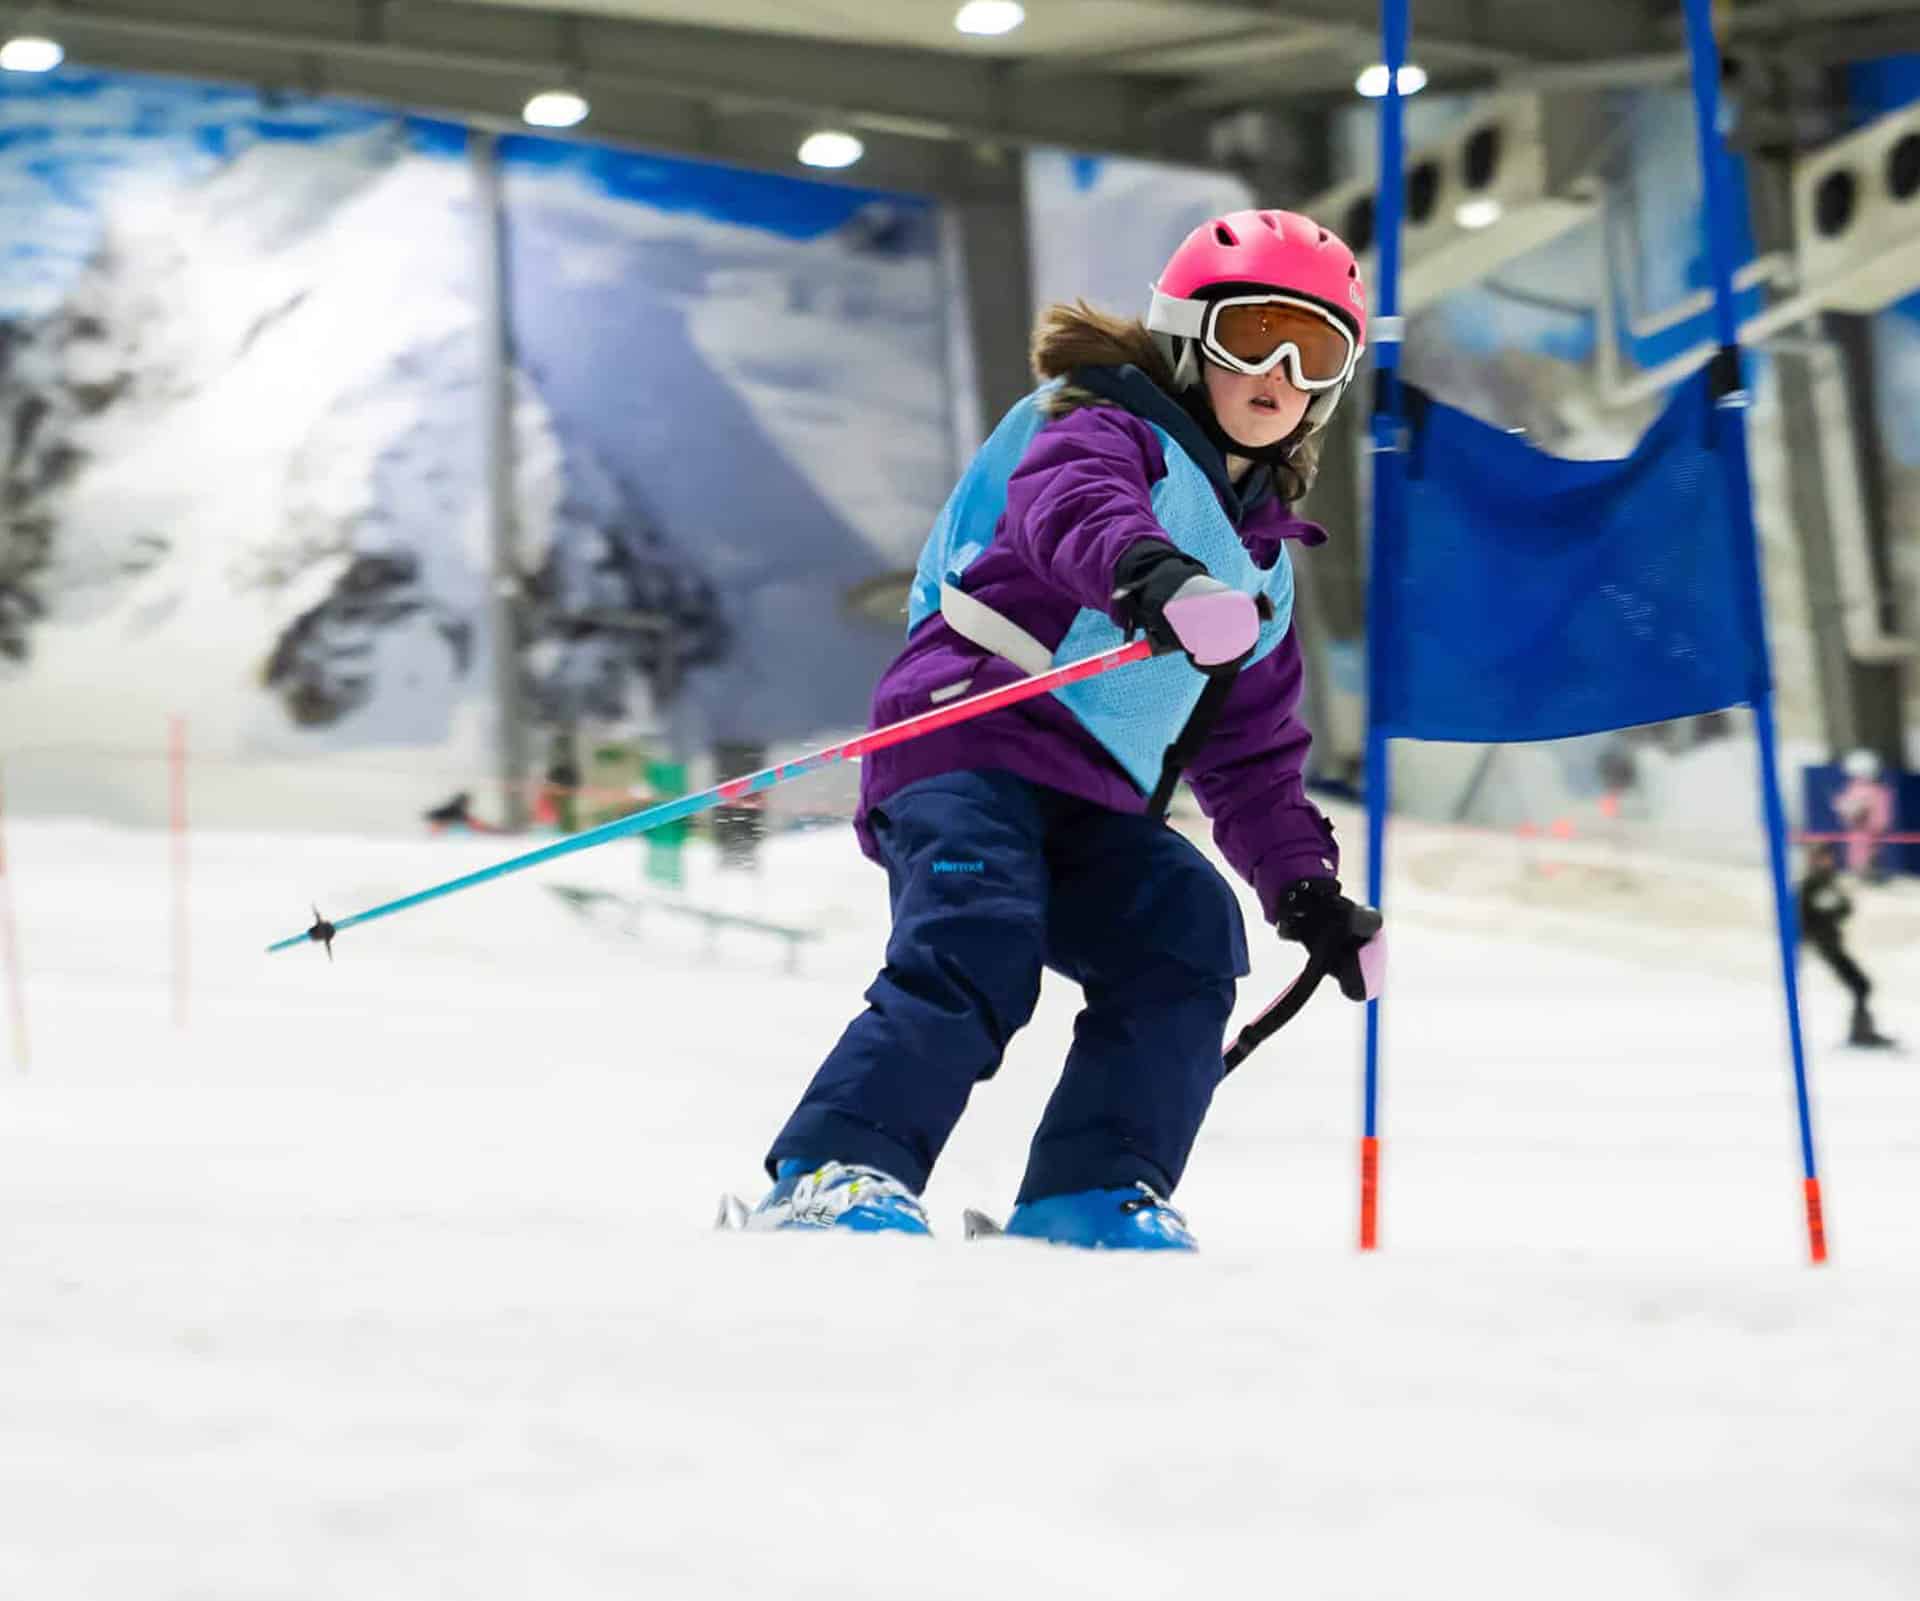 Kids ski racing at Snowplanet